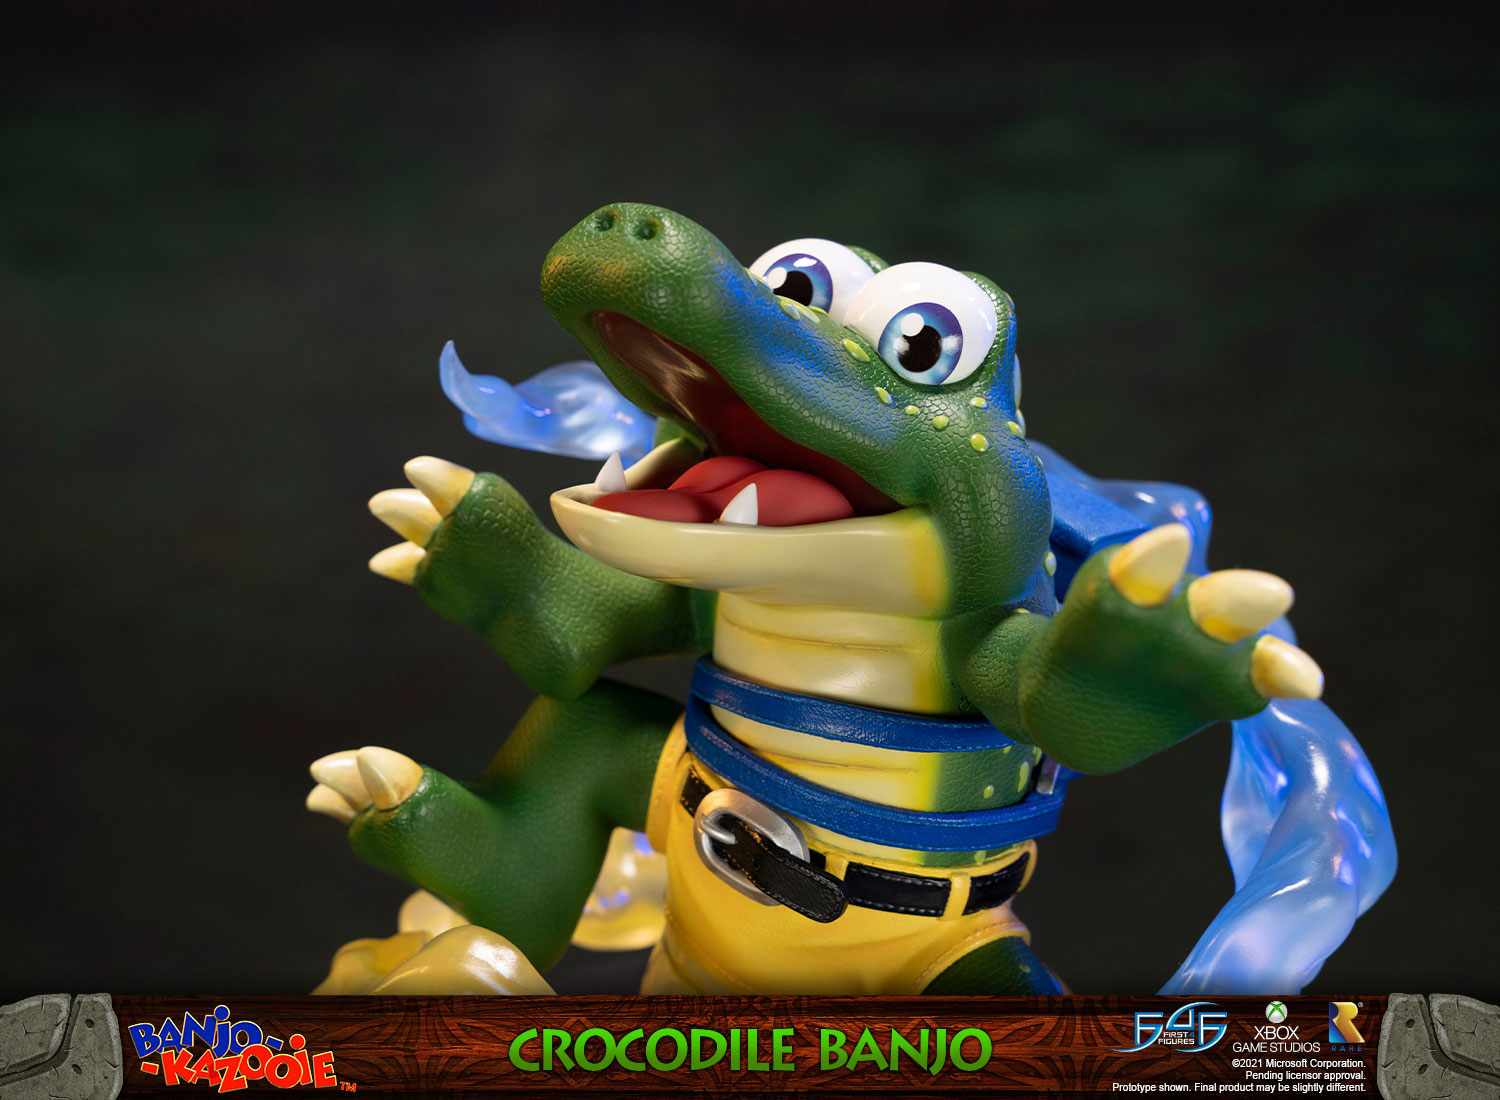 Crocodile Banjo